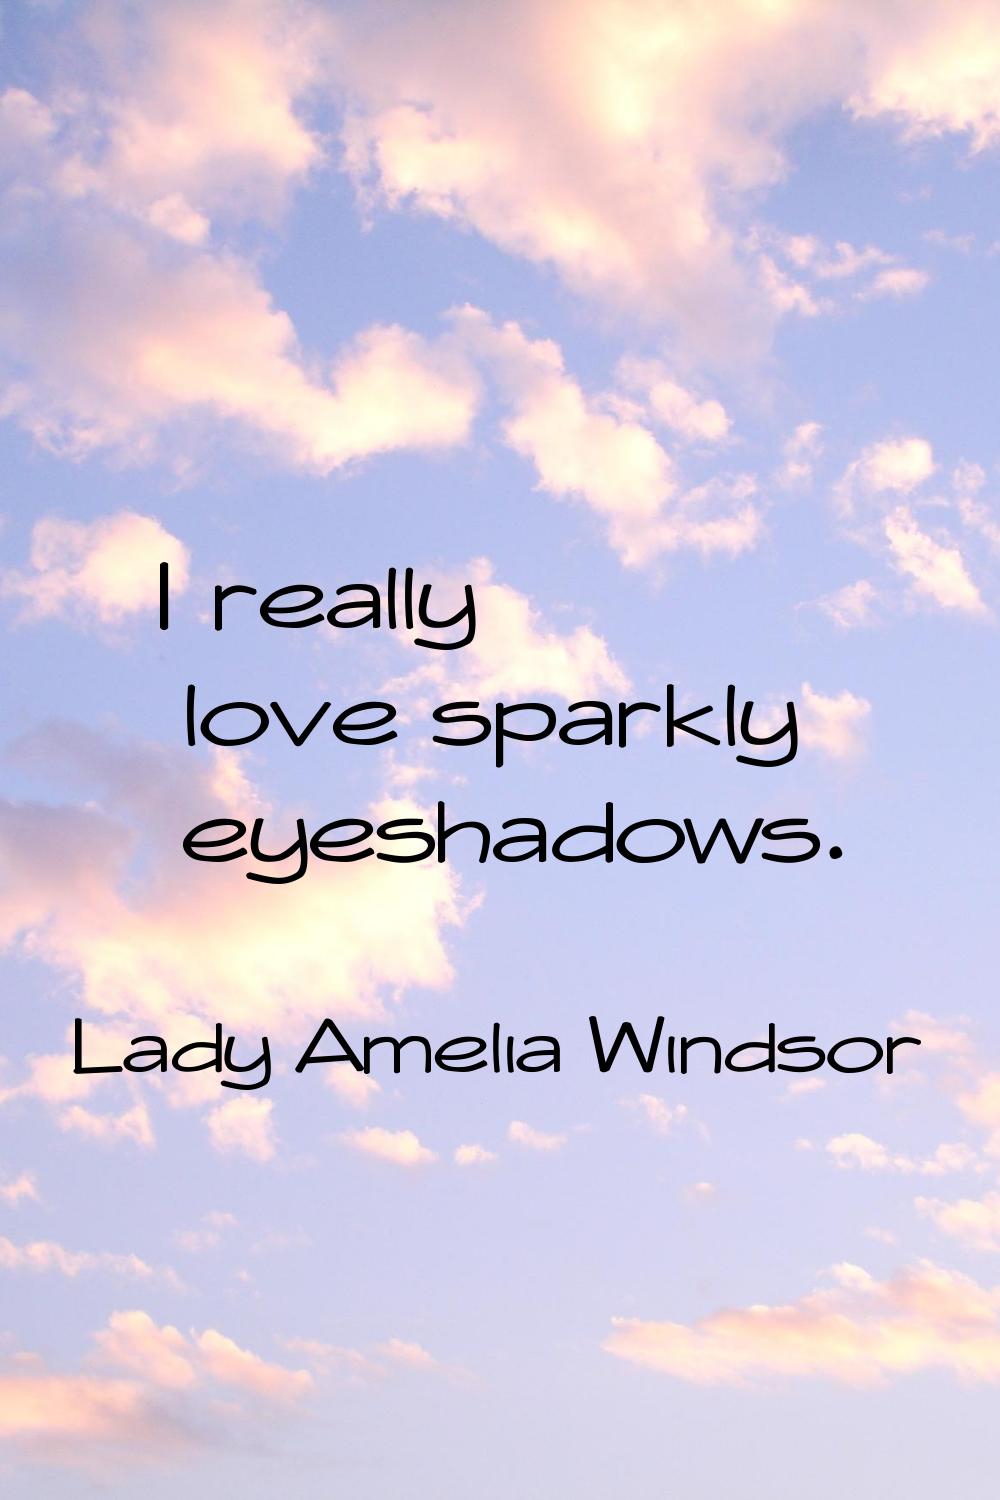 I really love sparkly eyeshadows.